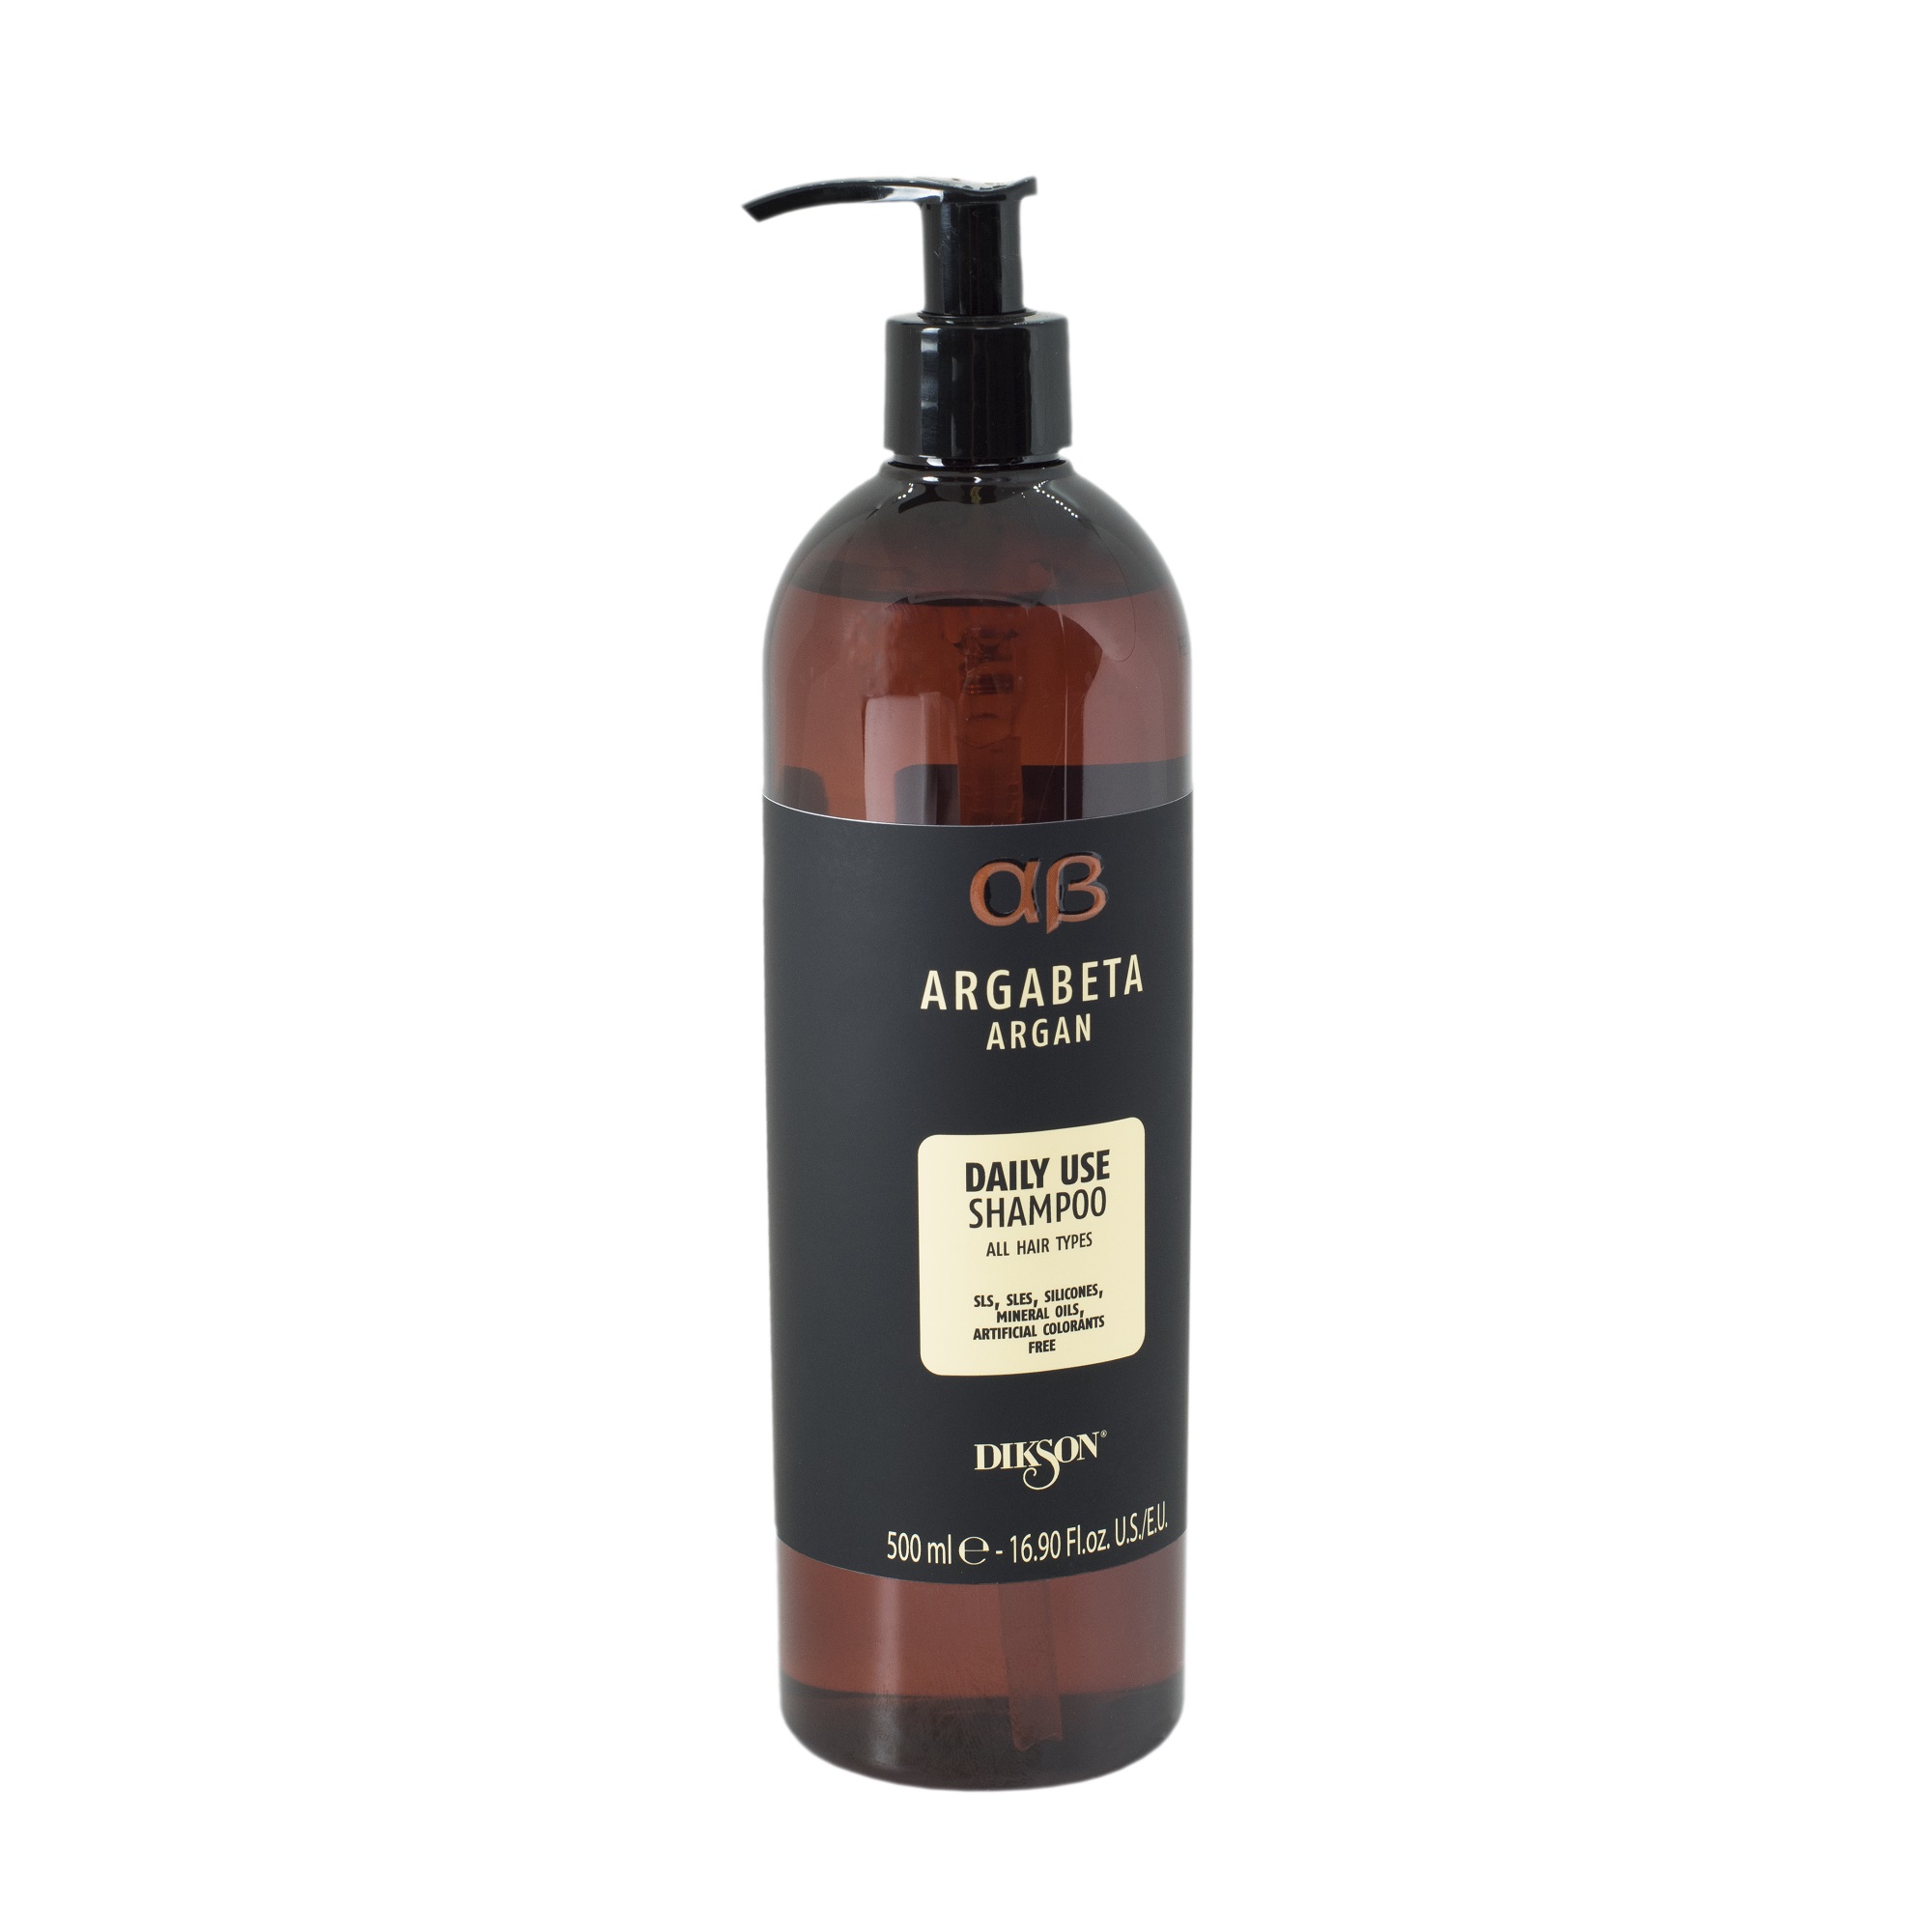 DIKSON, Шампунь для ежедневного использования с аргановым маслом Shampoo Daily Use Argabeta, 500 мл.